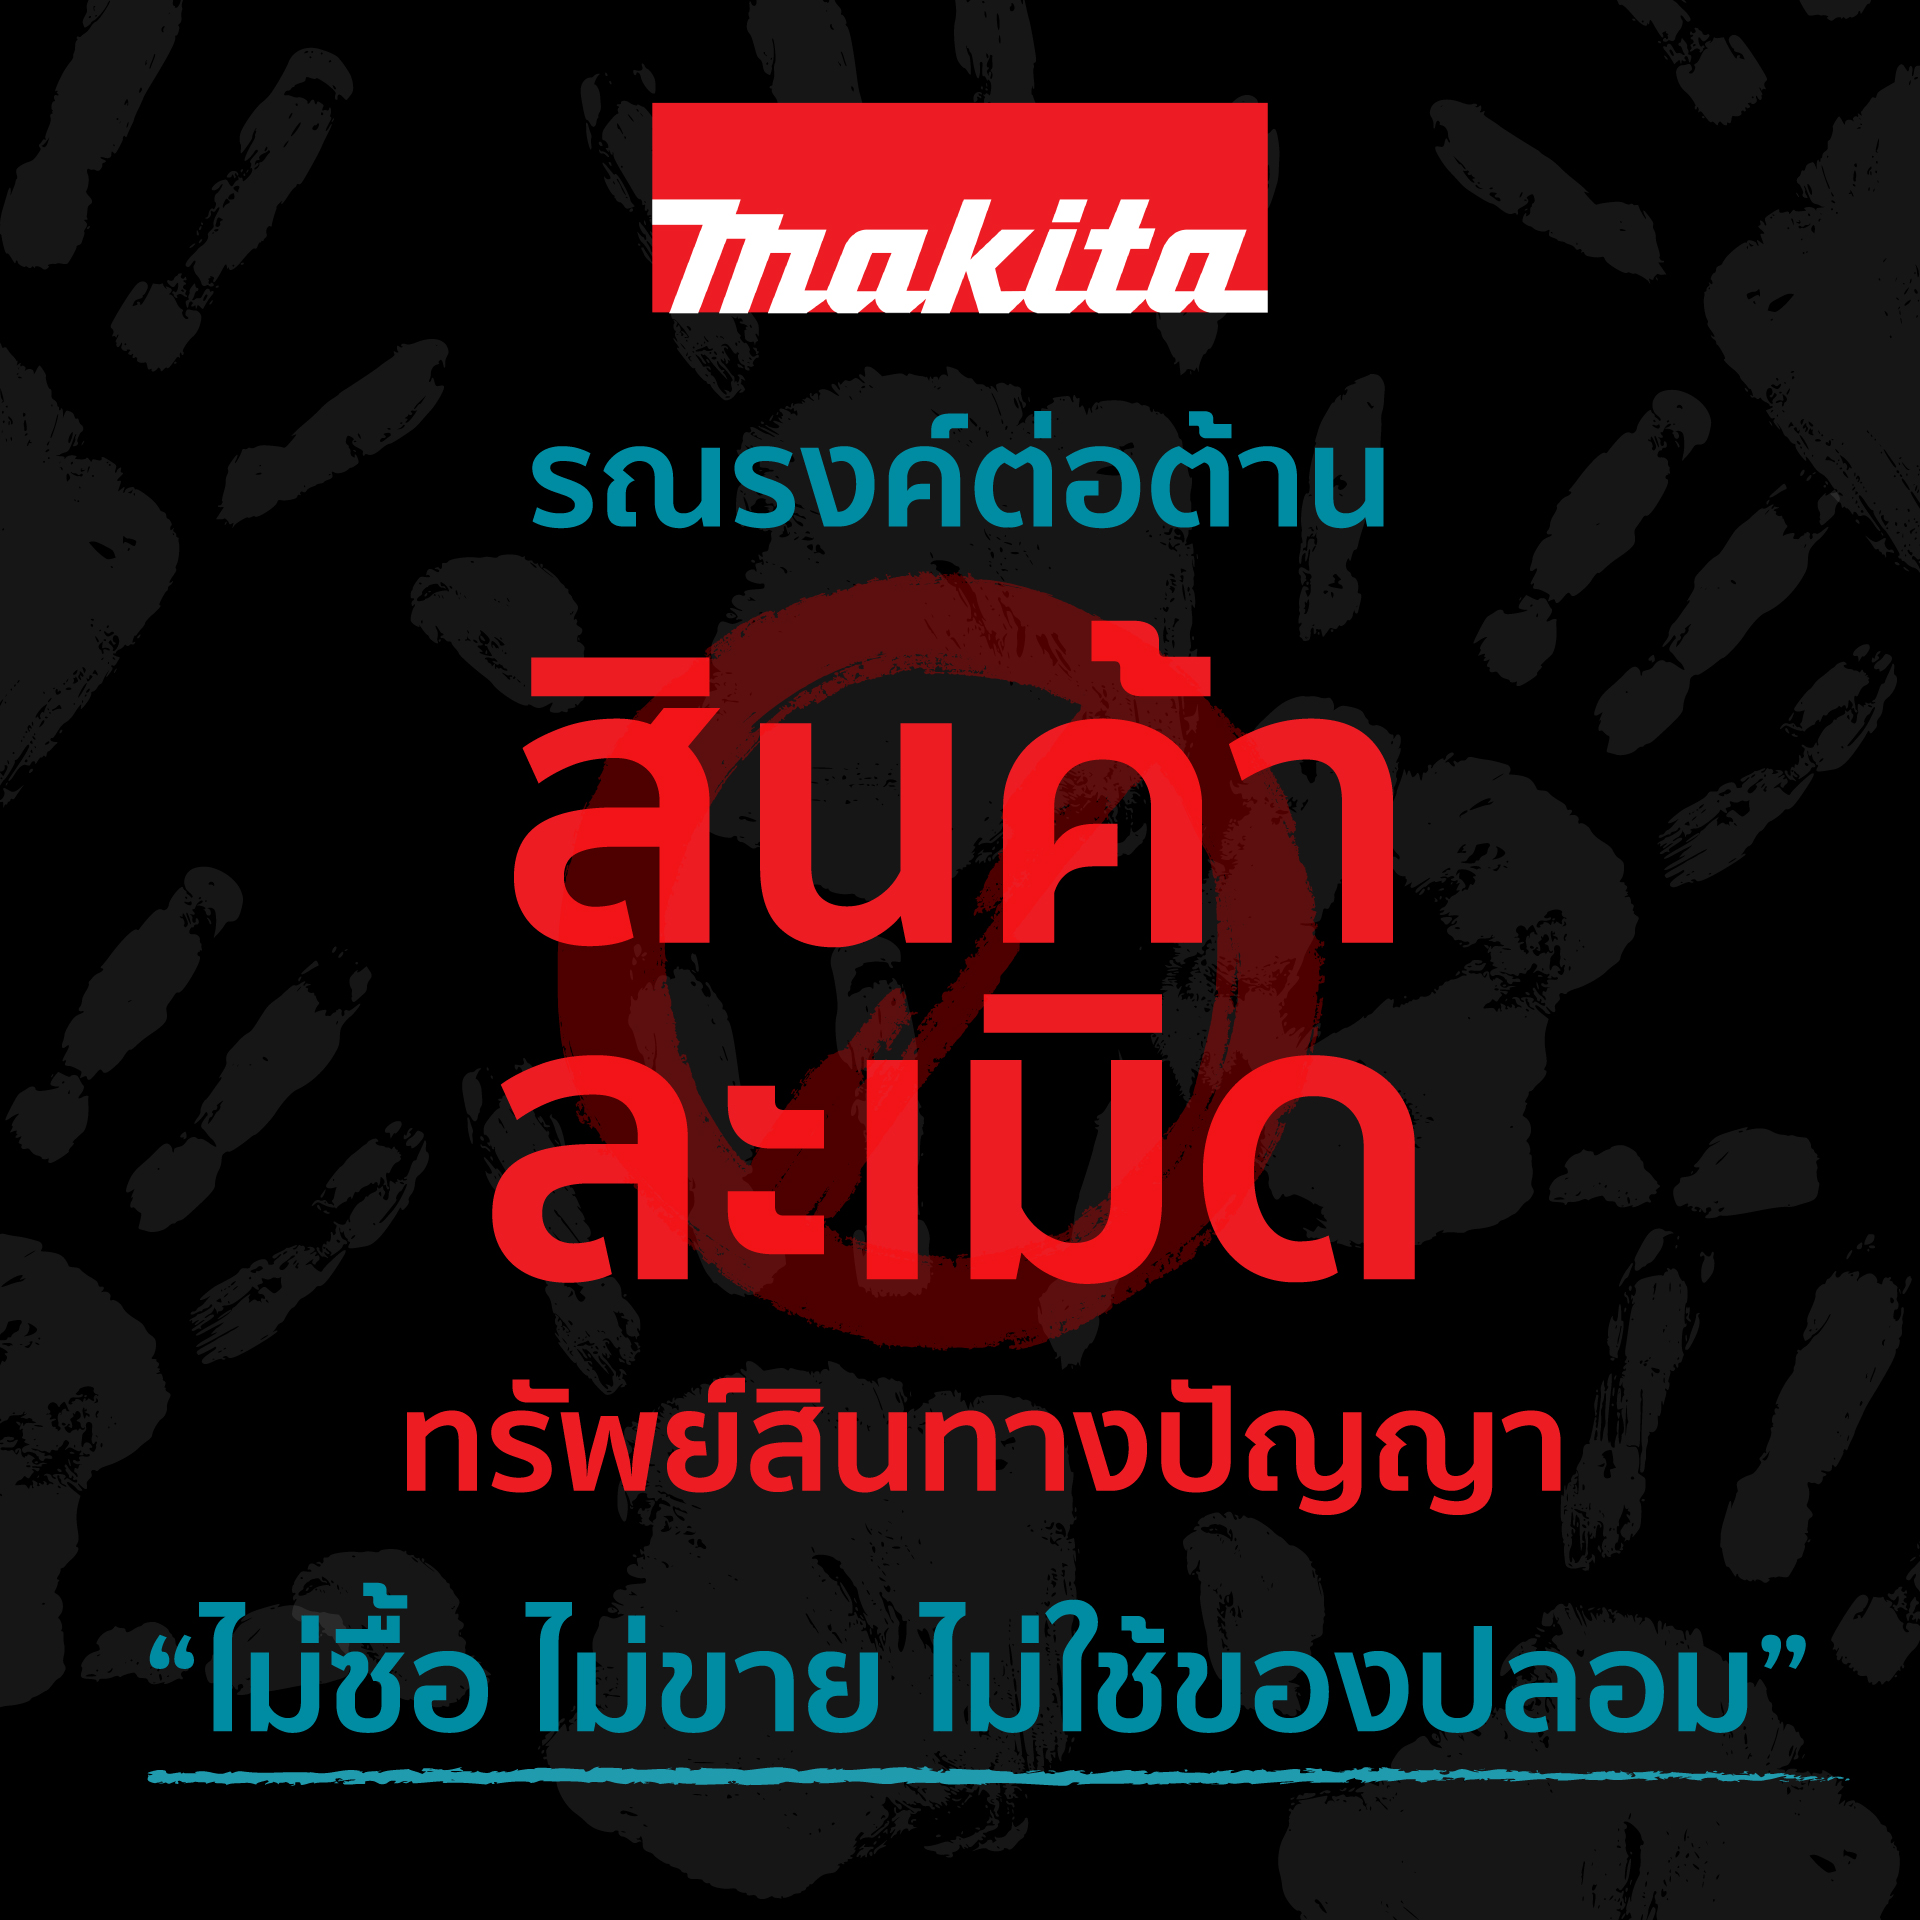 การรณรงค์ต่อต้าน สินค้าละเมิดทรัพย์สินทางปัญญา ของ Makita ในประเทศไทย